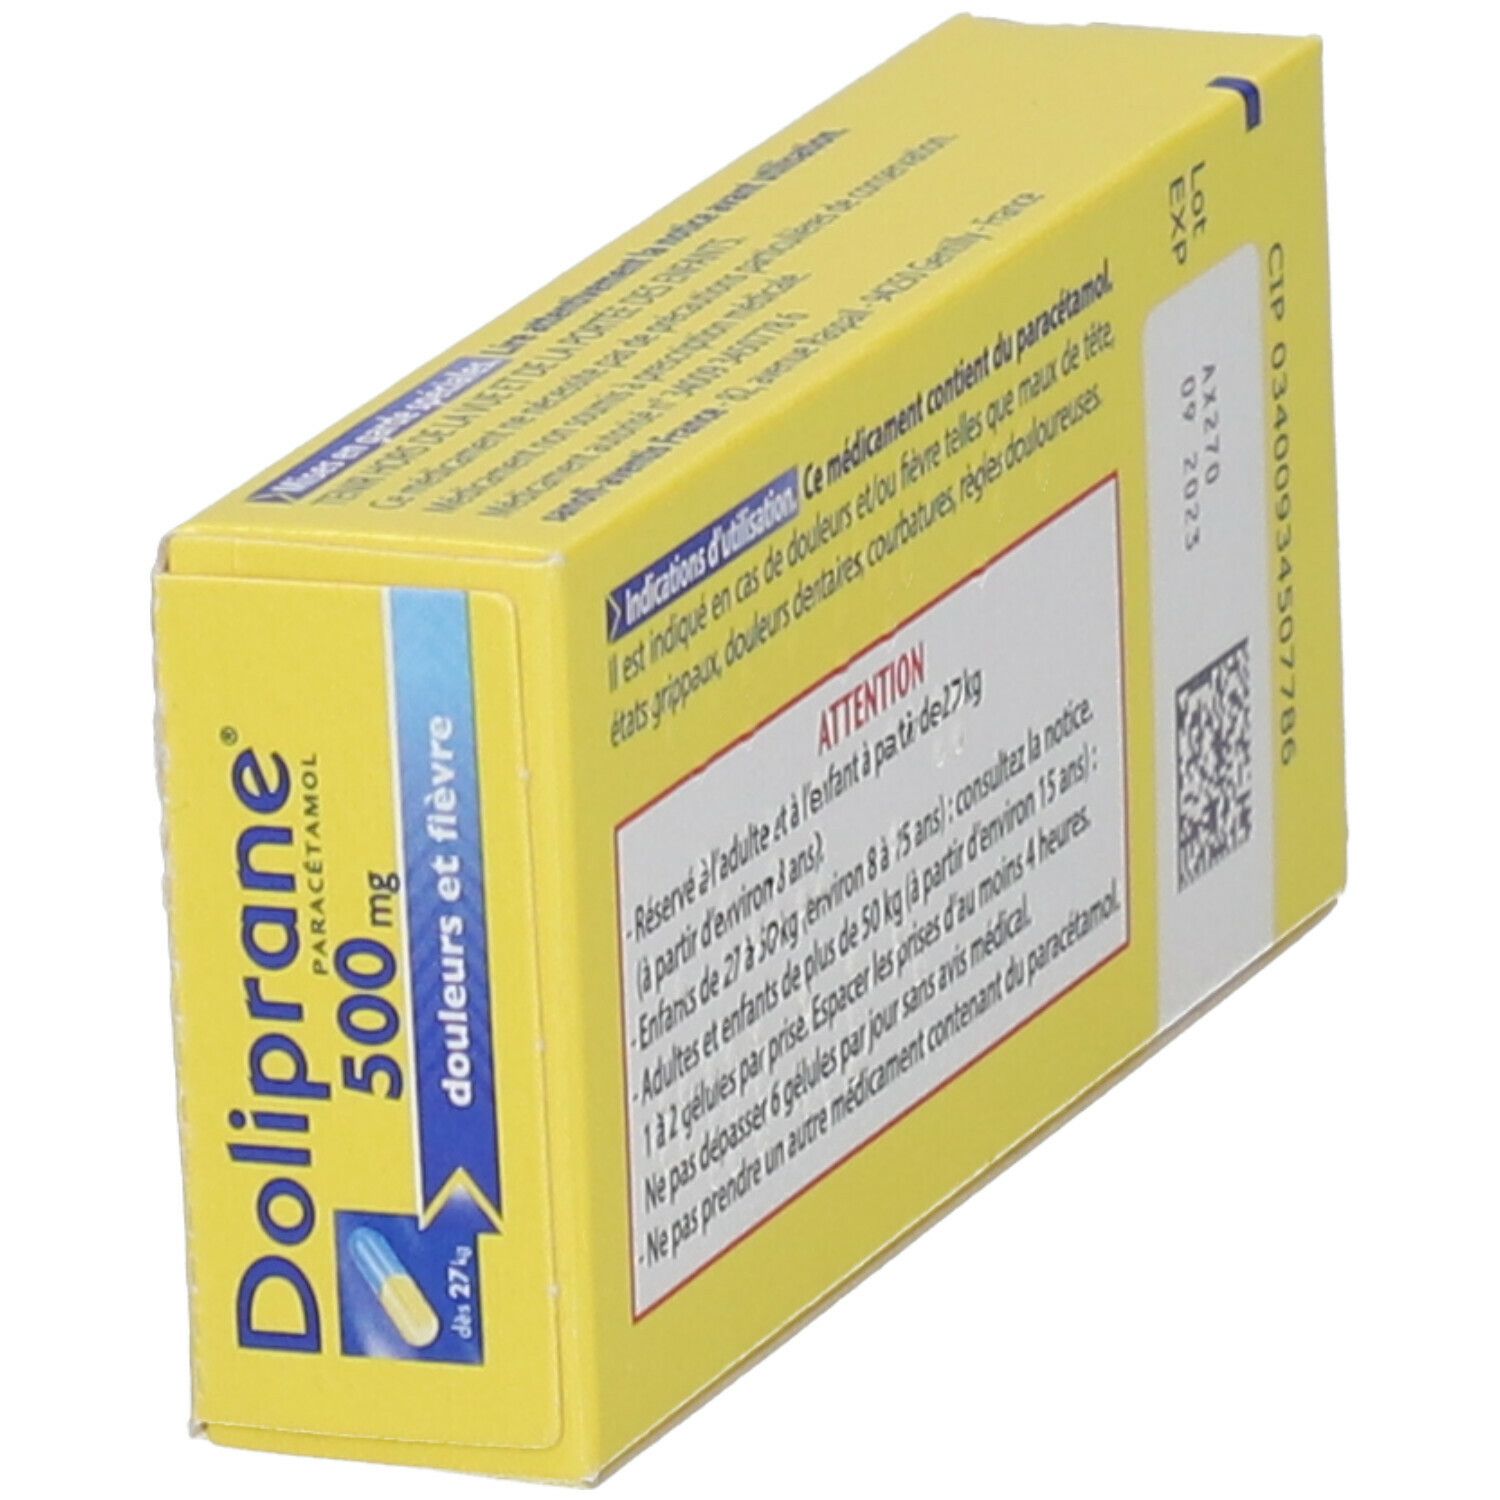 DOLIPRANE 500 mg Gélules